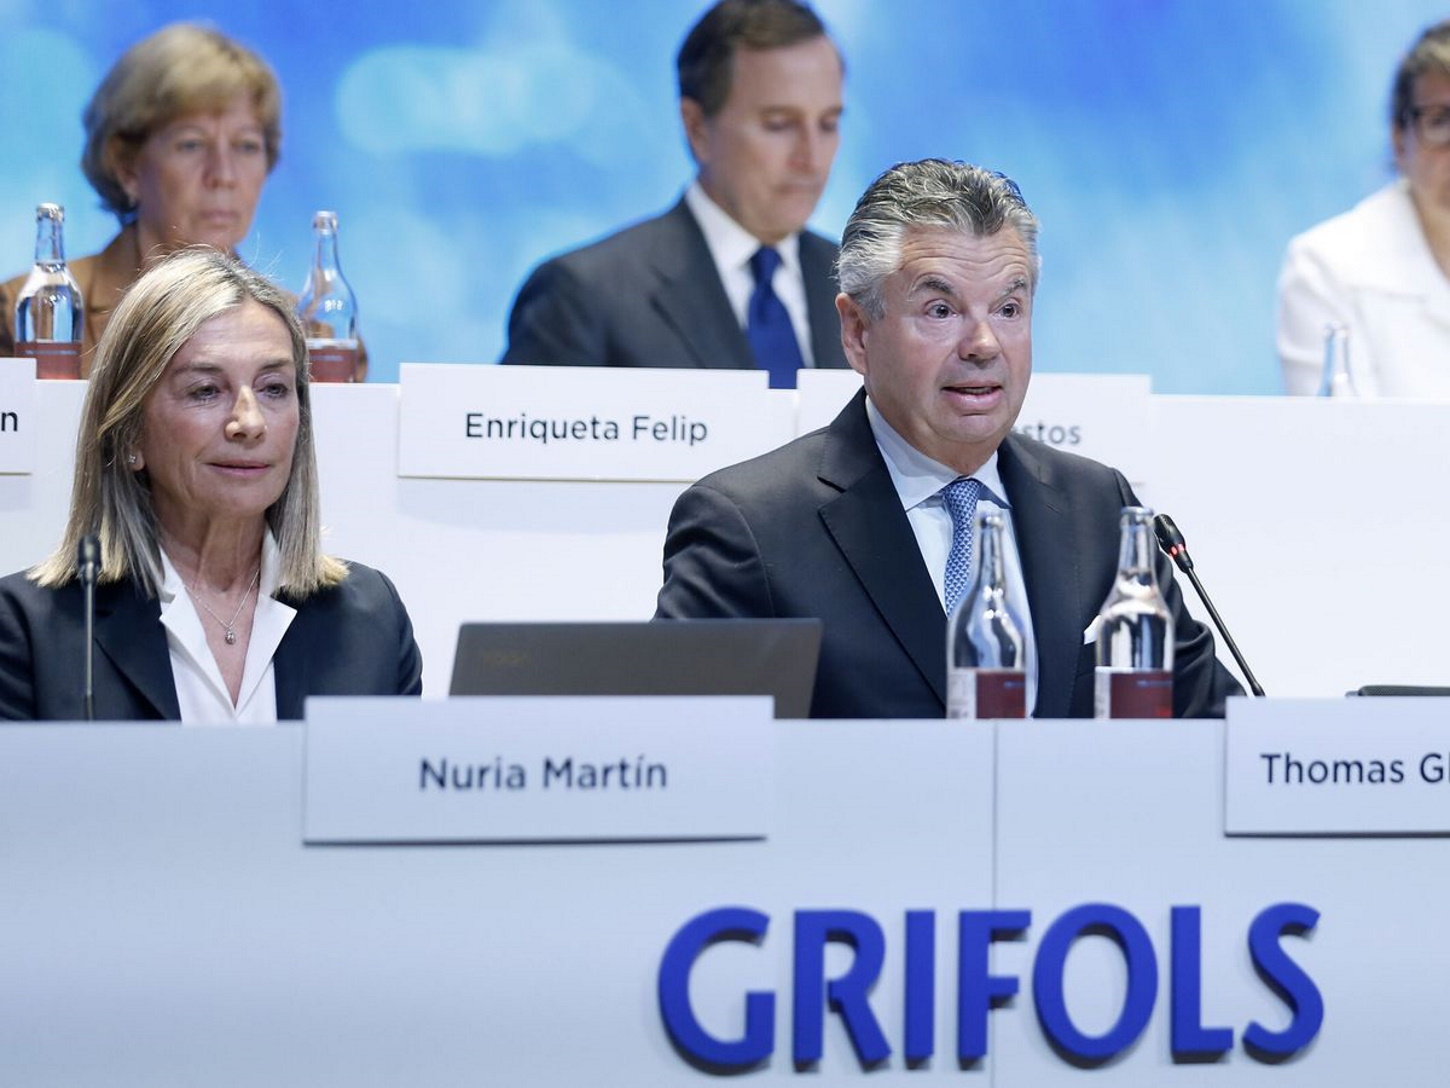 L'informe assenyala el CEO de Grifols: "No és ni nou ni independent"